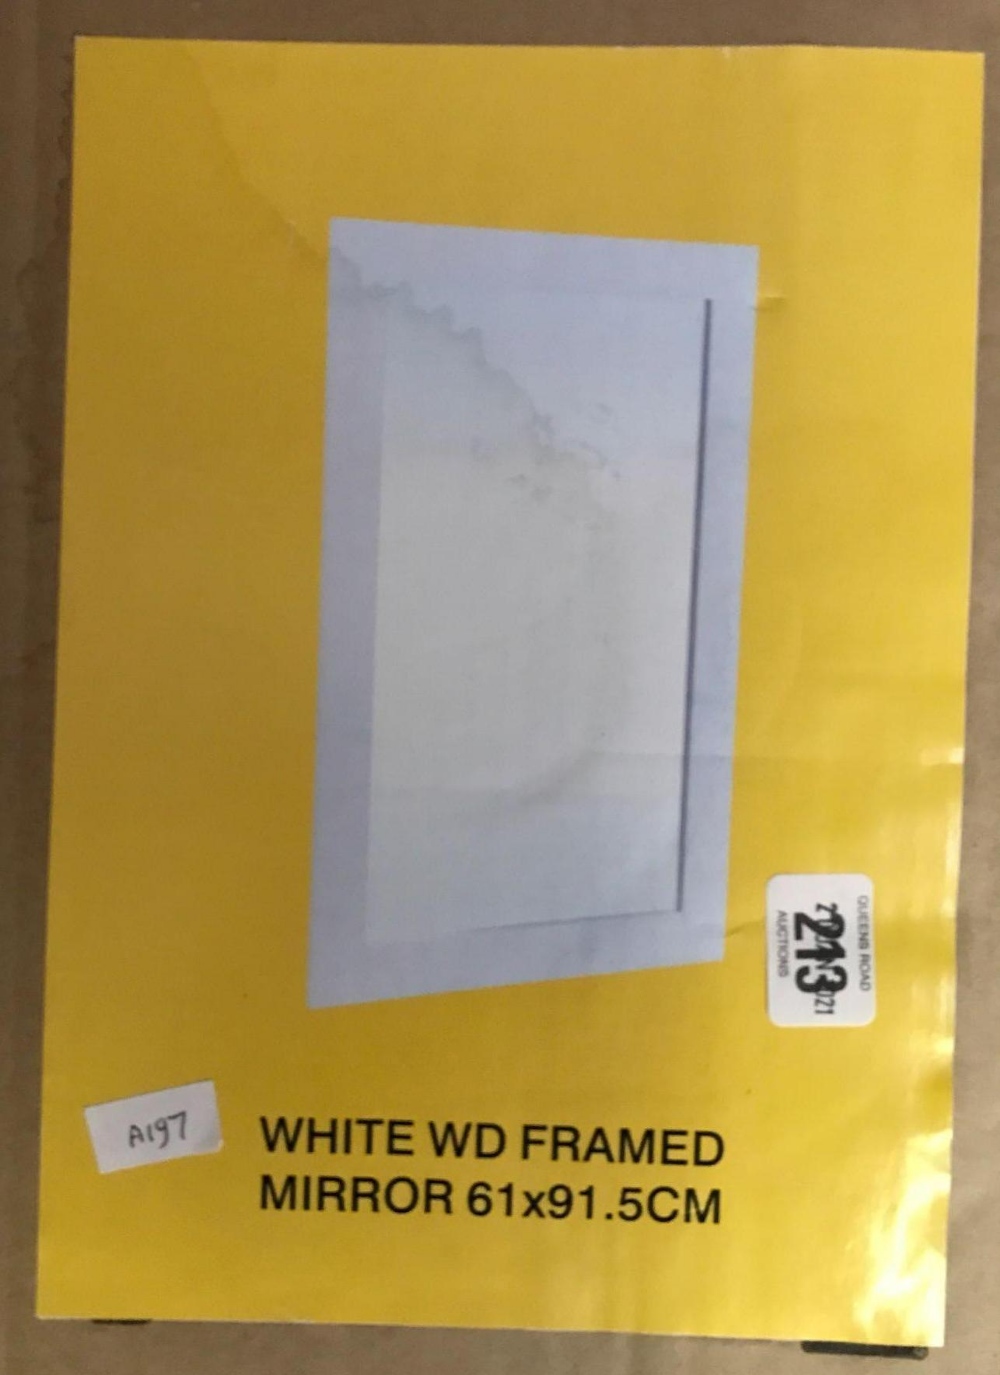 WHITE WOODEN FRAMED MIRROR 61 X 91.5 CM